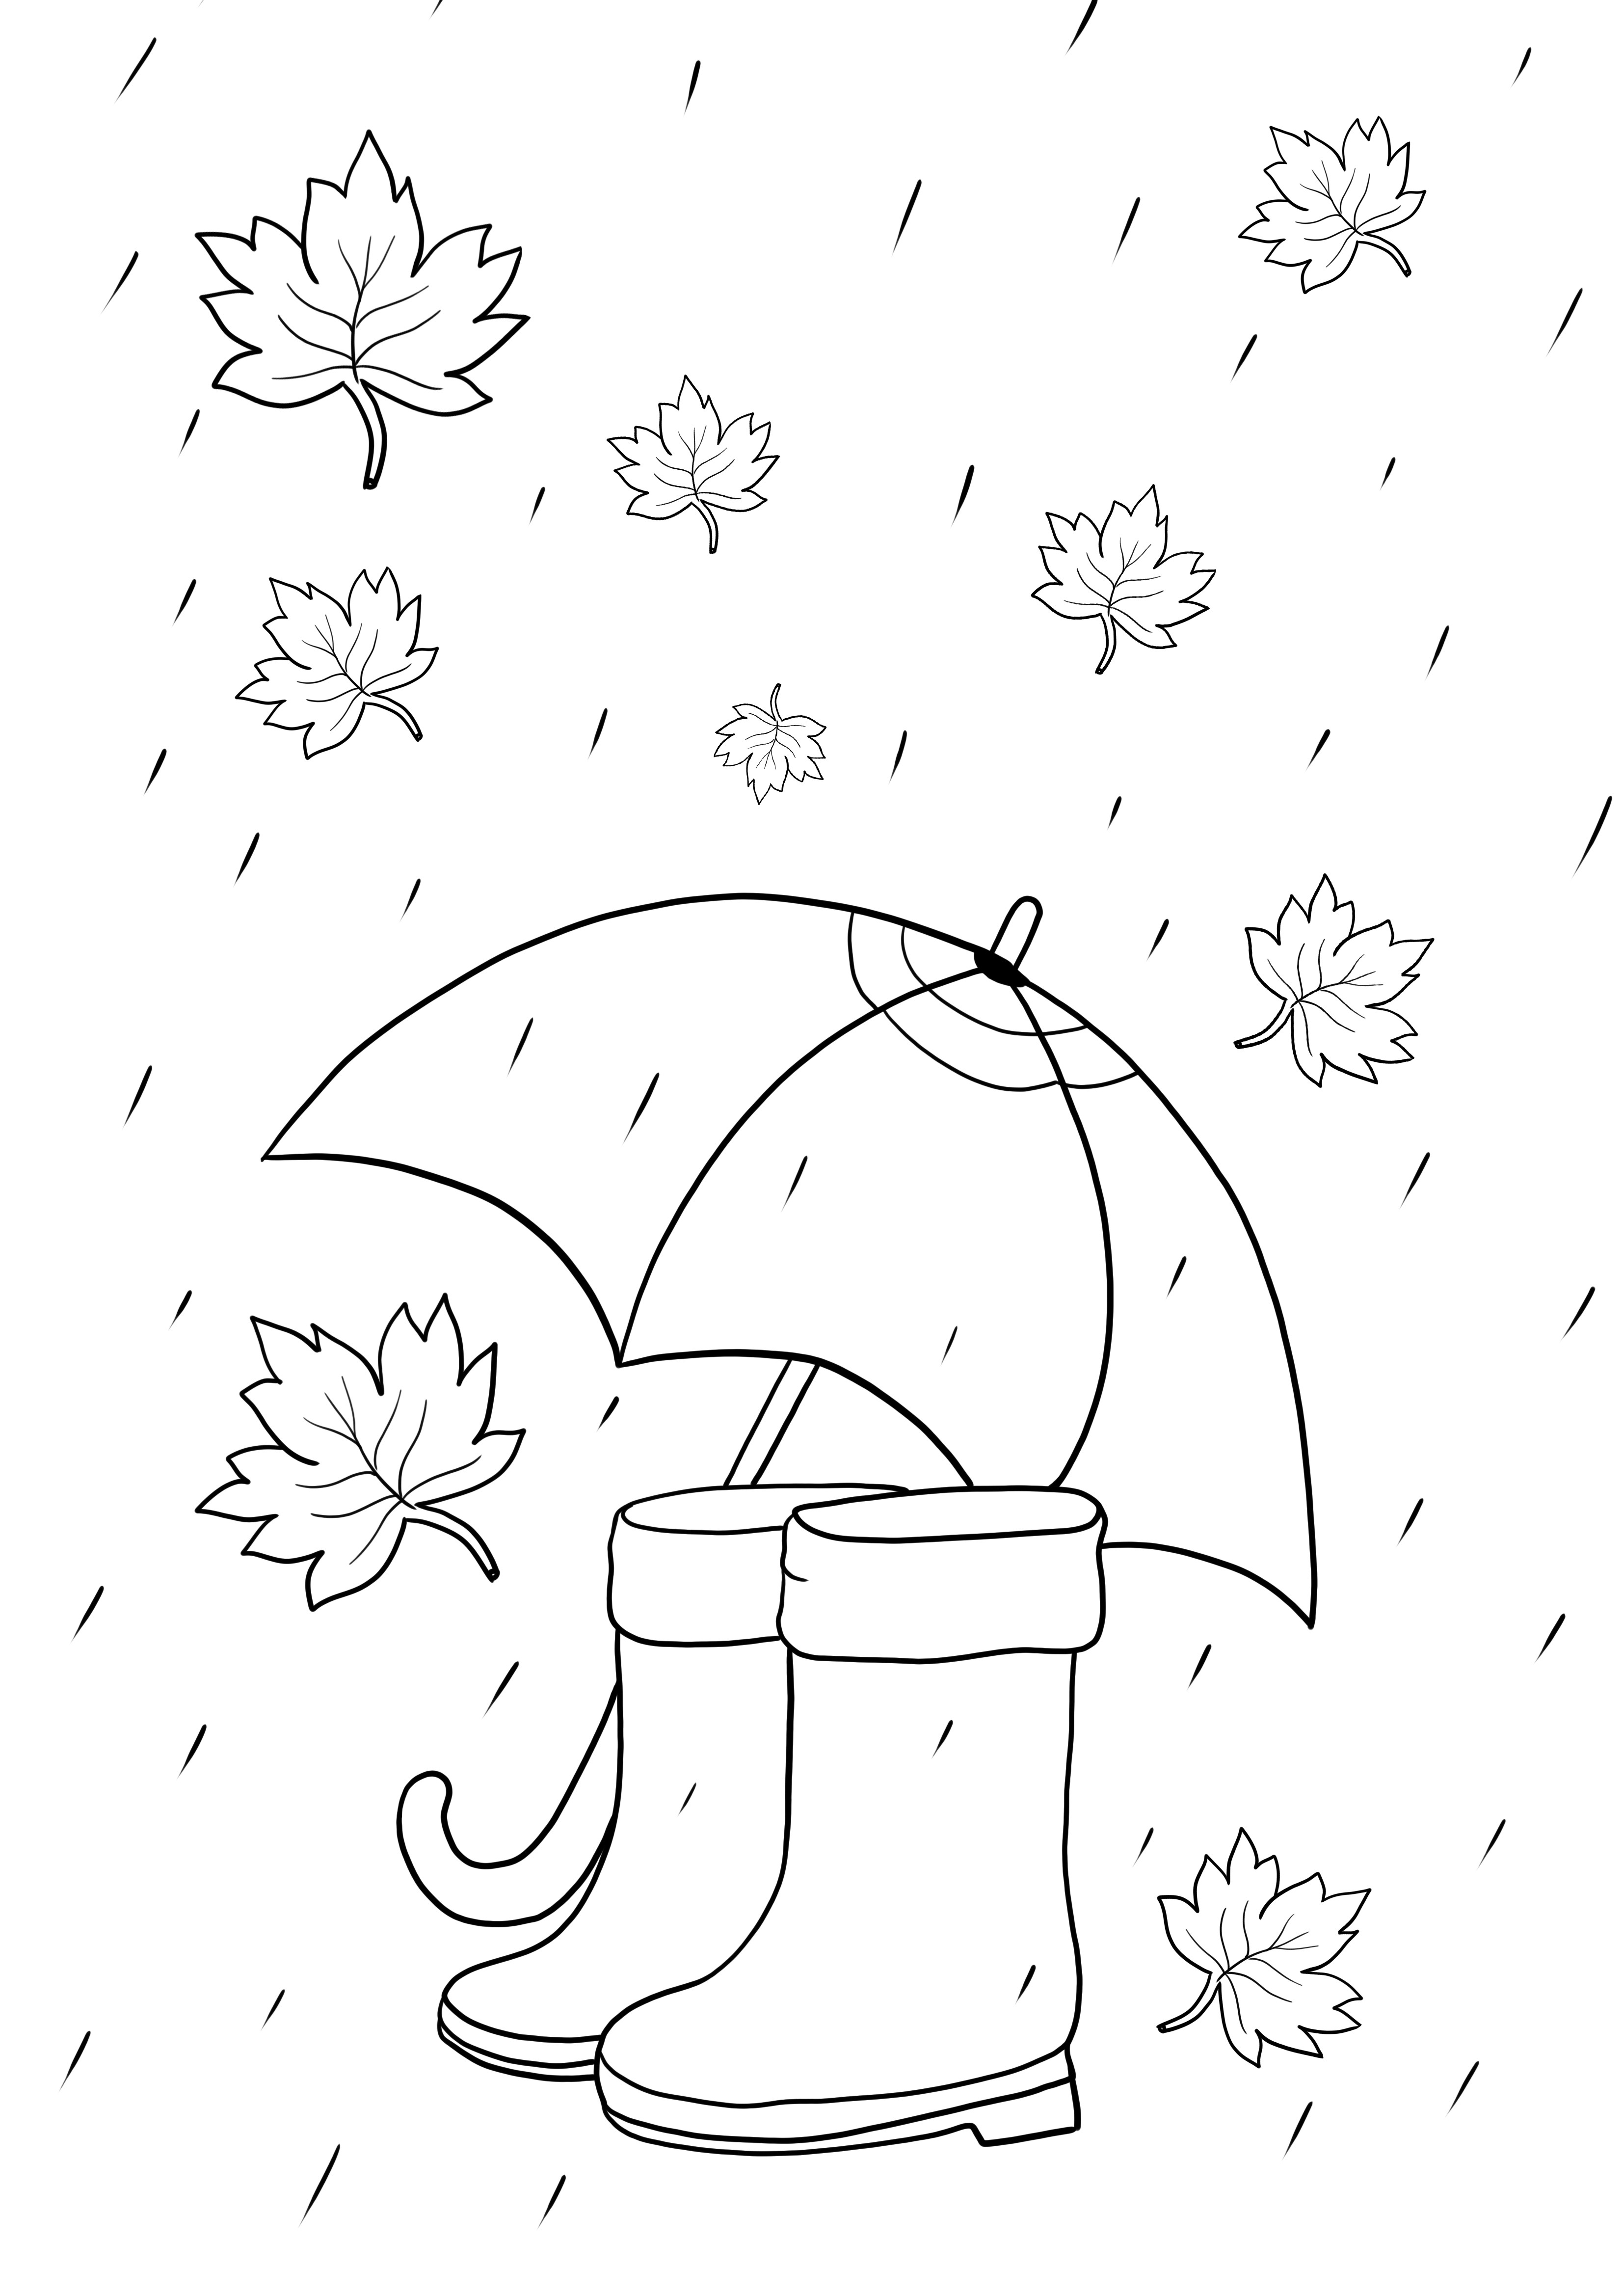 Articoli per il tempo piovoso-ombrello e stivali da stampare o scaricare gratuitamente